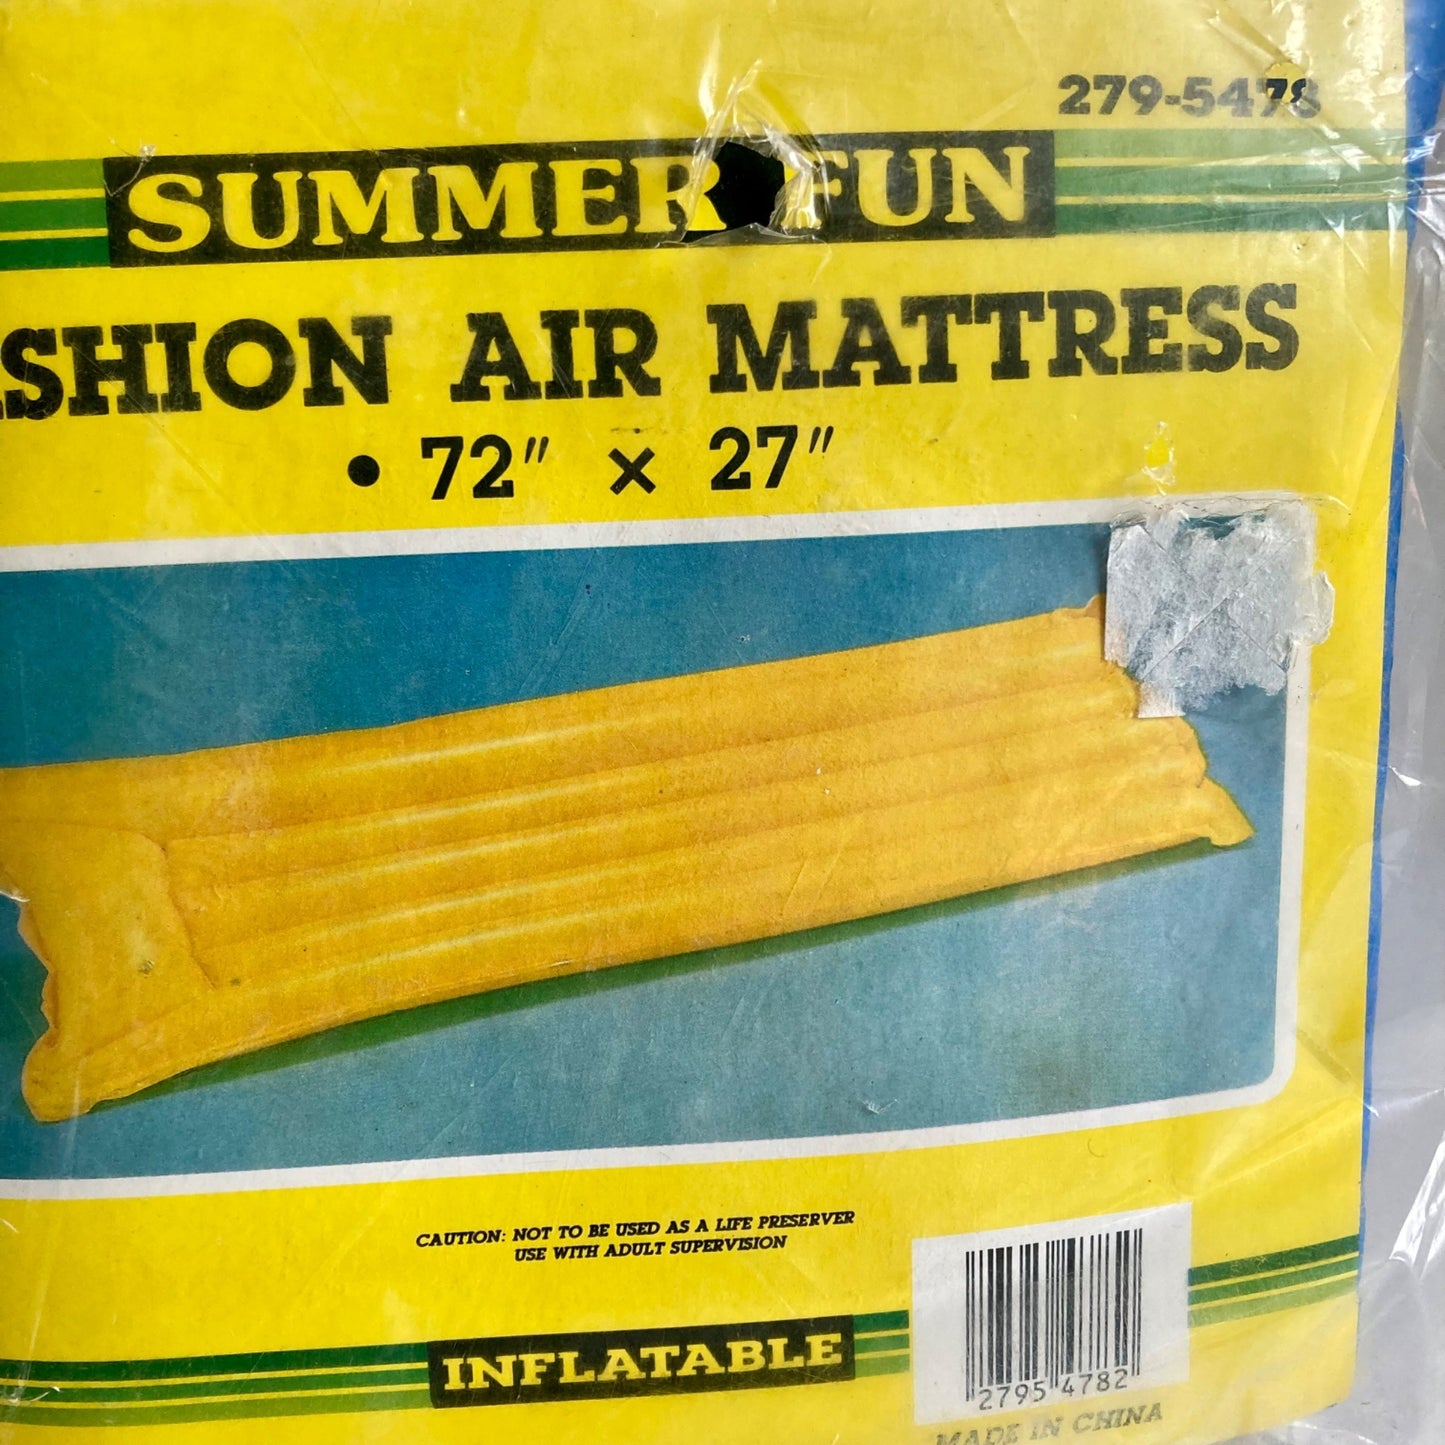 NOS Vintage Summer Fun Fashion Air Mattress 72 x 27" Blue Inflatable